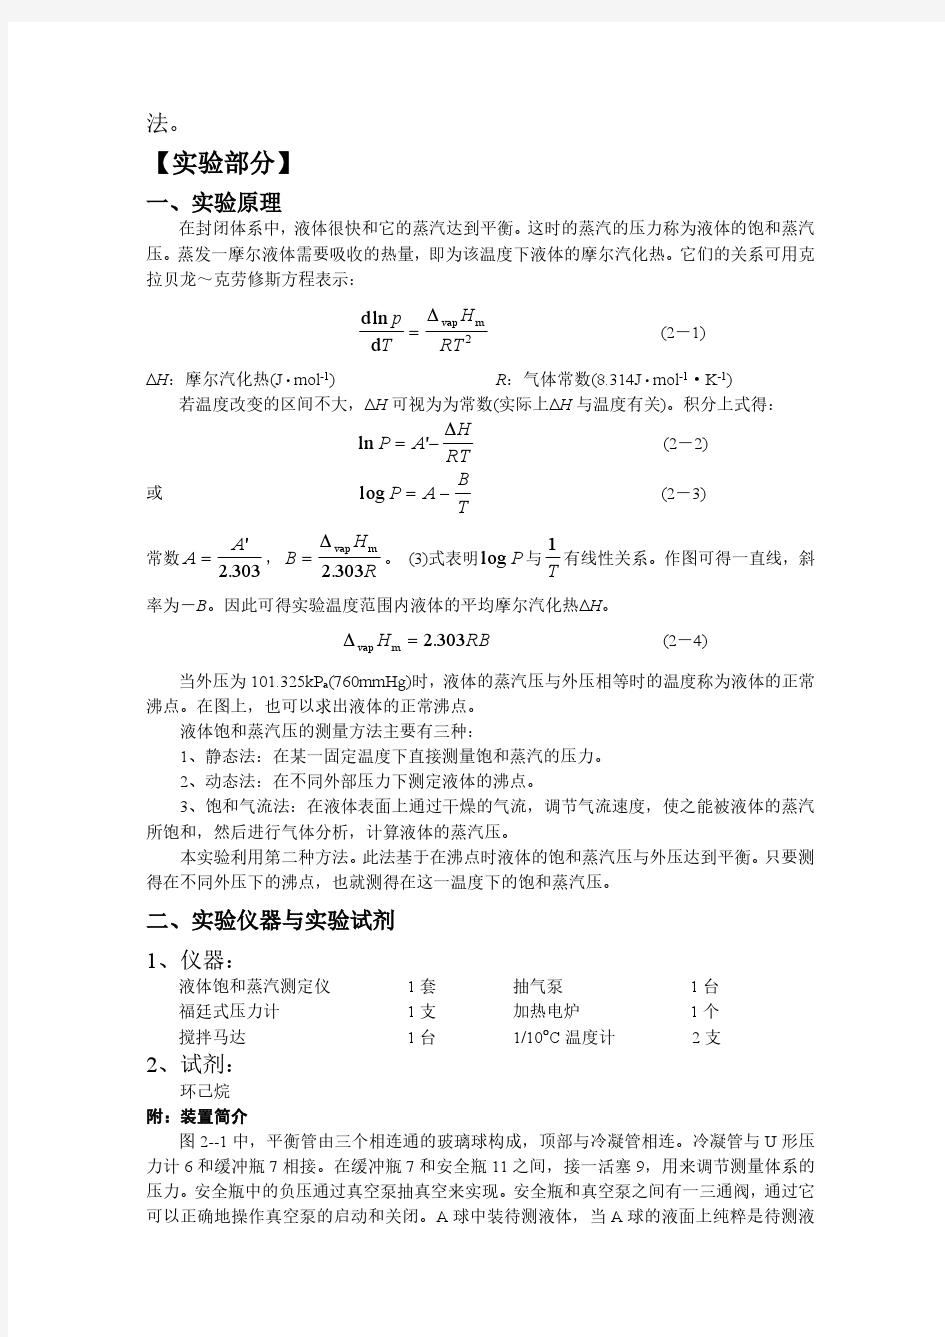 中国科大物化实验4 液体饱和蒸汽压的测定报告